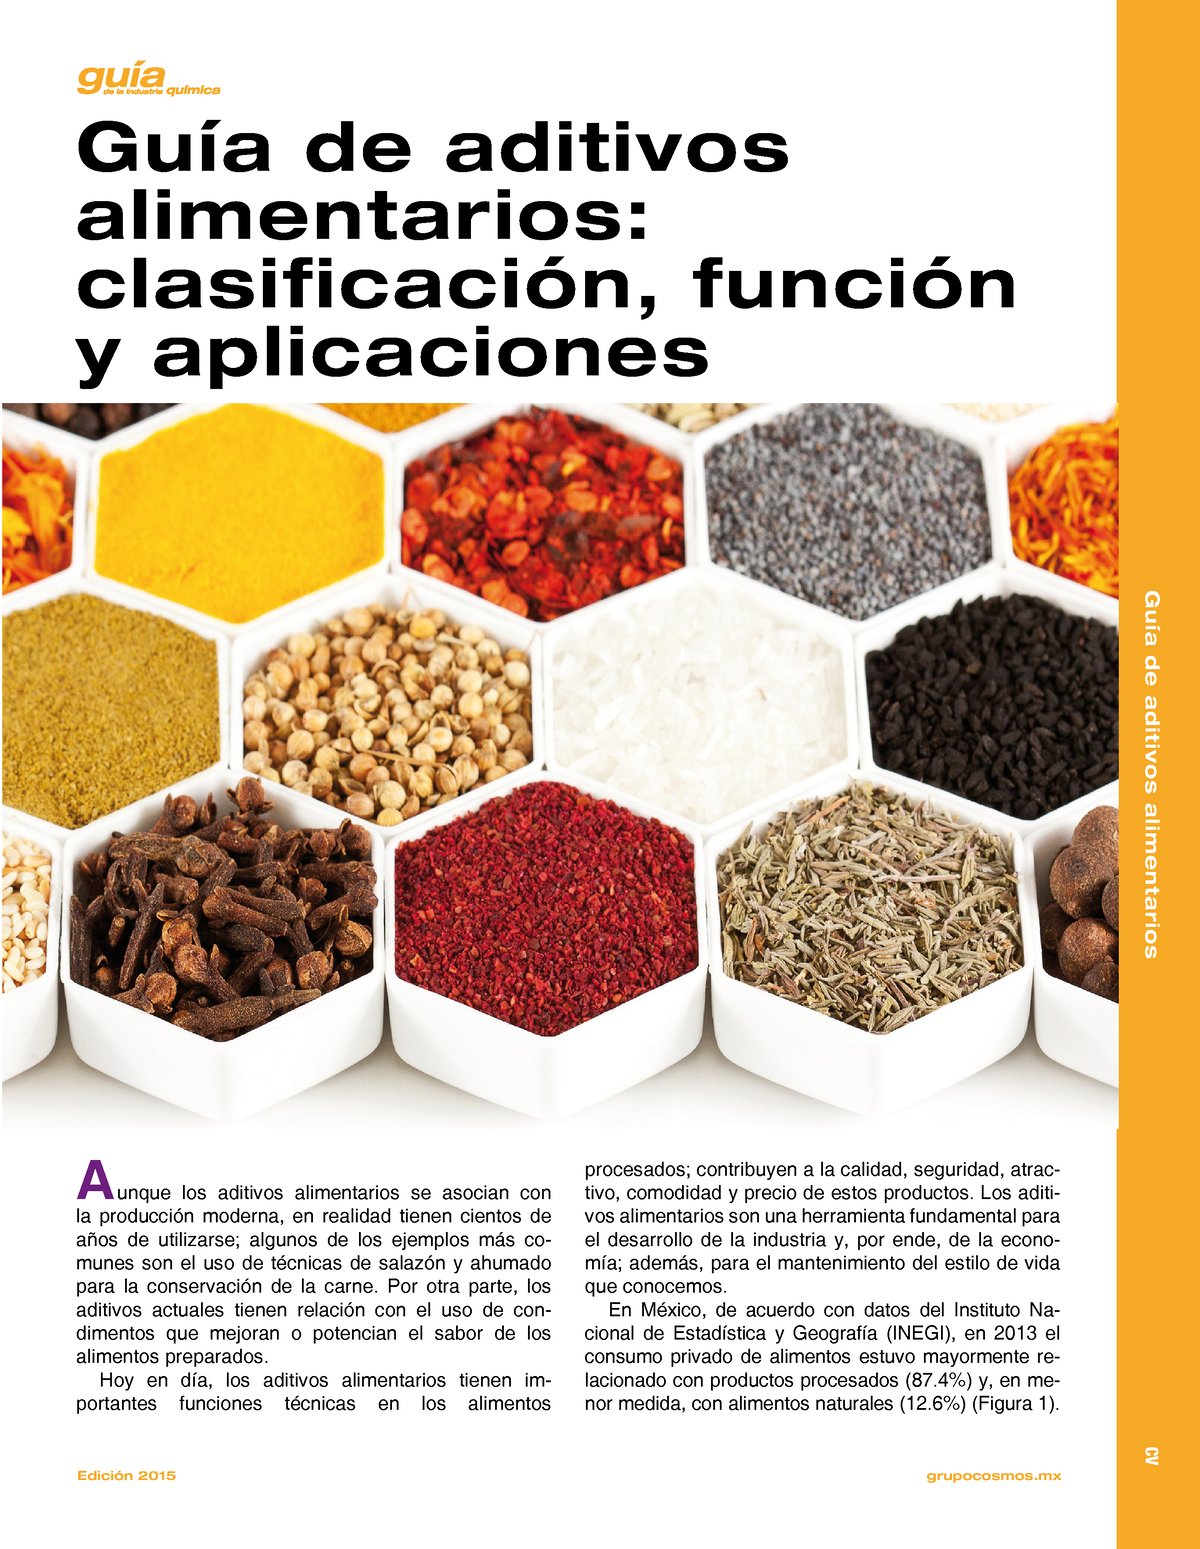 Guía De Aditivos Alimentarios Clasificación Función Y Aplicaciones Edición 2015 Grupocosmos 0623